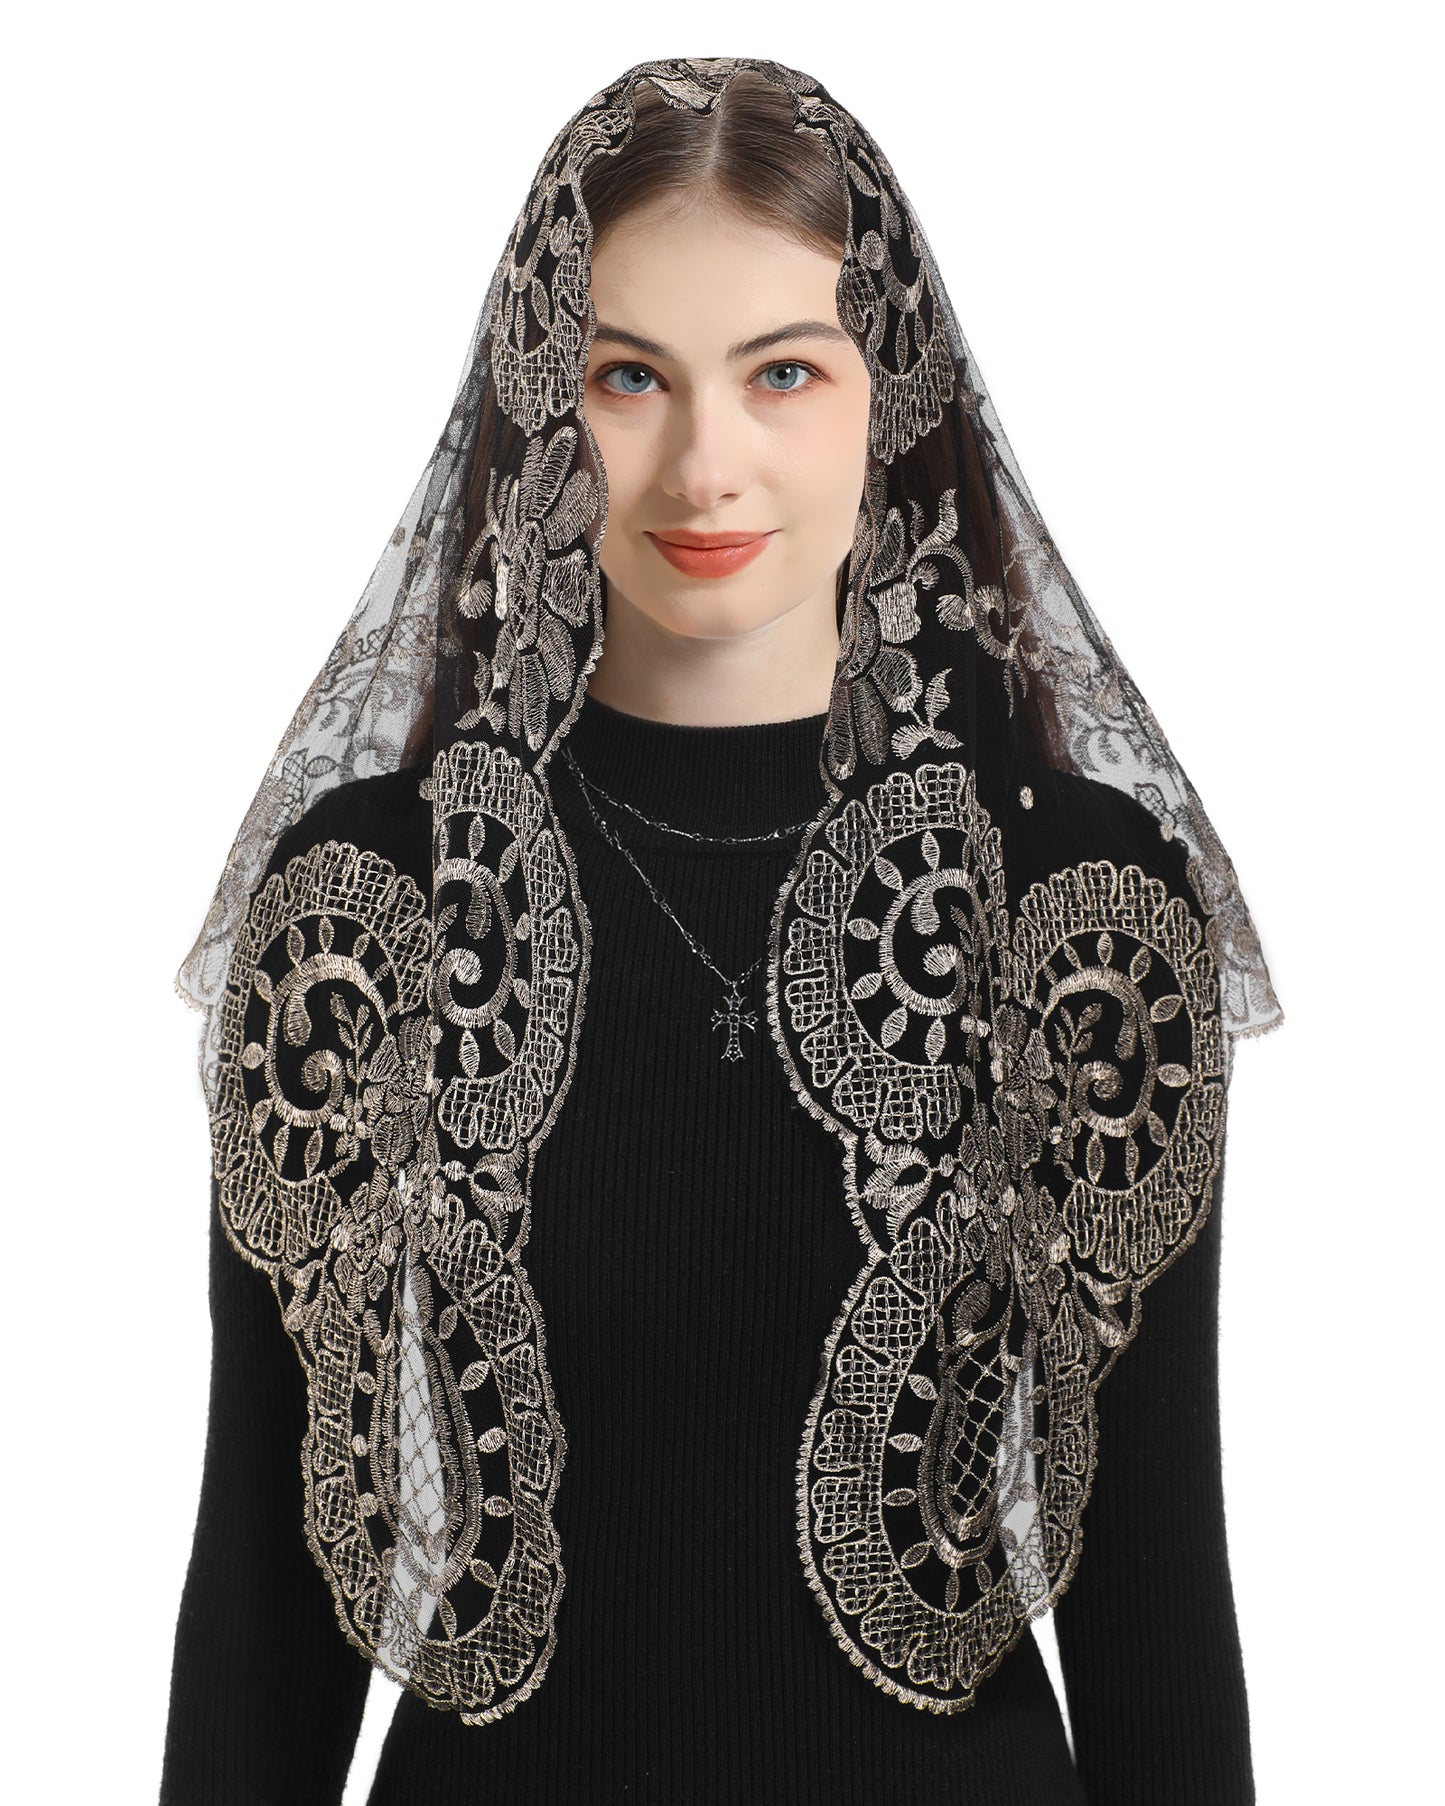 Bozidol Catholic Ladies Lace Veil - Our Lady of Camellia Sheer Catholic Ladies Triangle Lace Veil